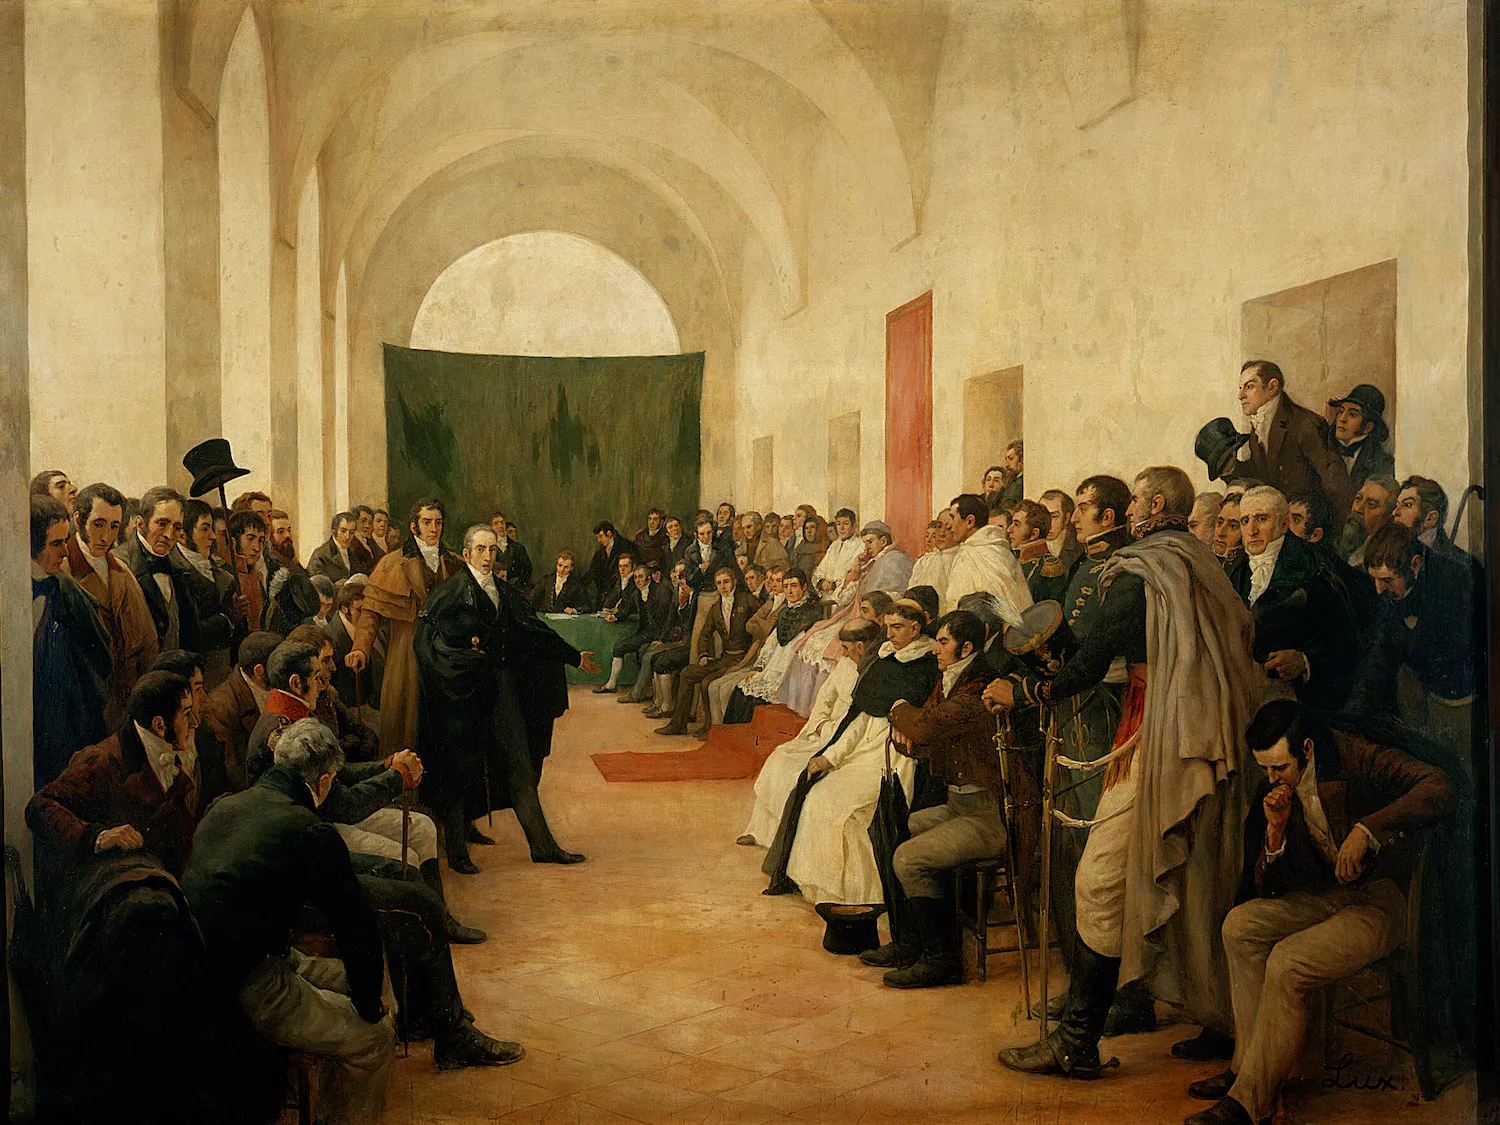 En aquest quadre, es mostra el 'cabildo abierto', una reunió dels membres més influents de Riu de la Plata, a Argentina